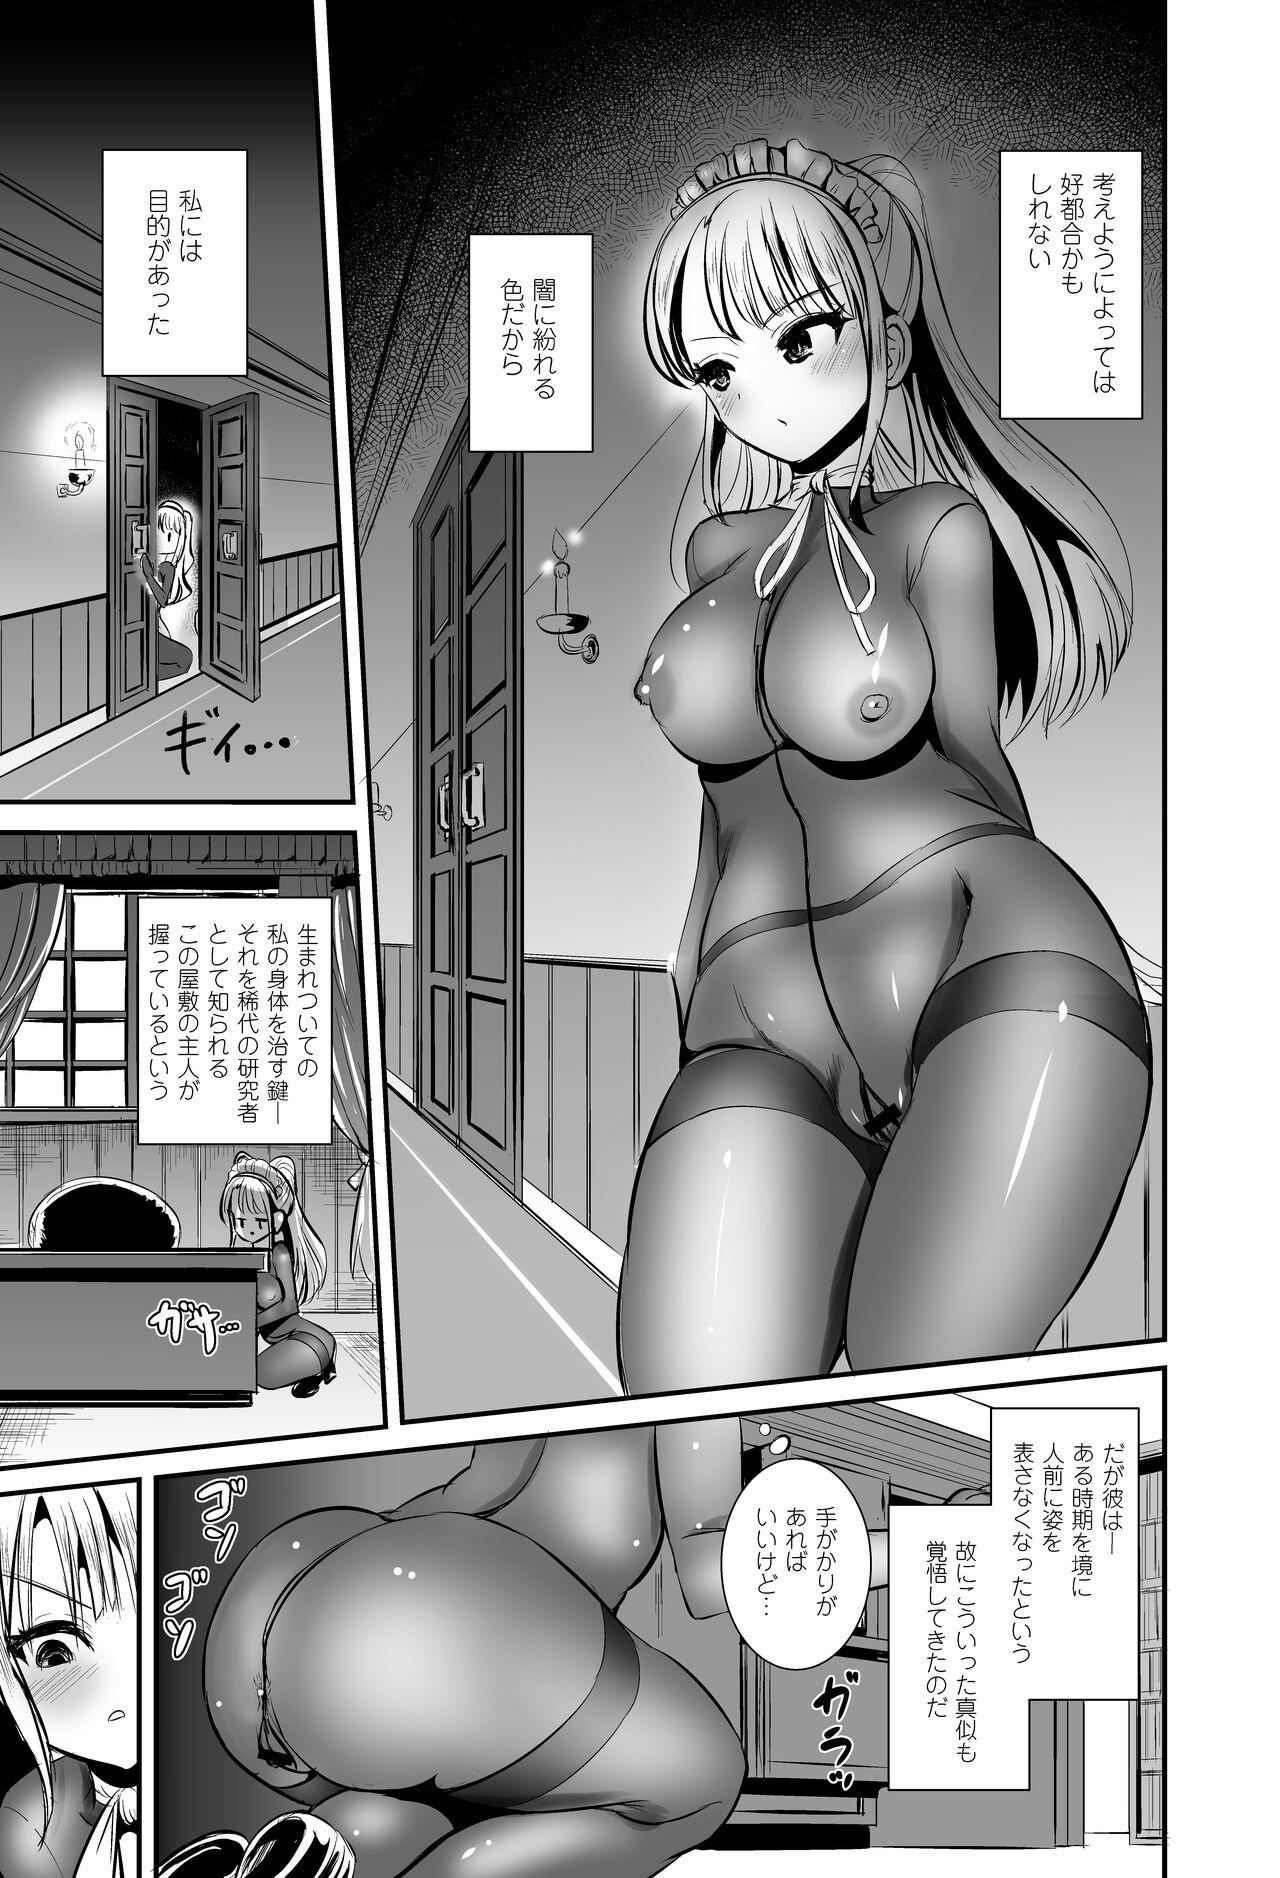 Machine Watashi wa Dare ka no Kaburimono - Original Work - Page 6